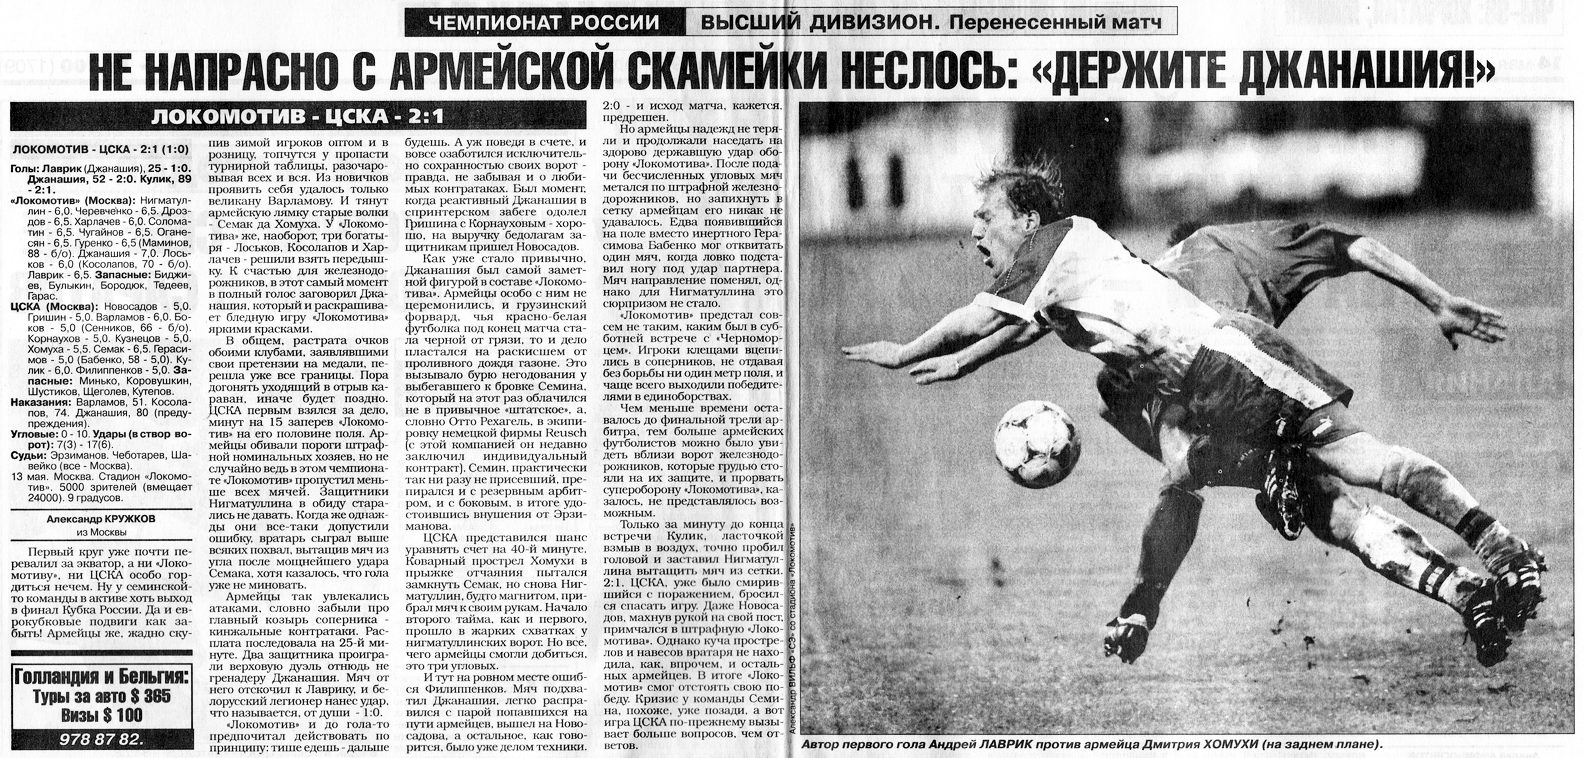 1998-05-13.LokomotivM-CSKA.3